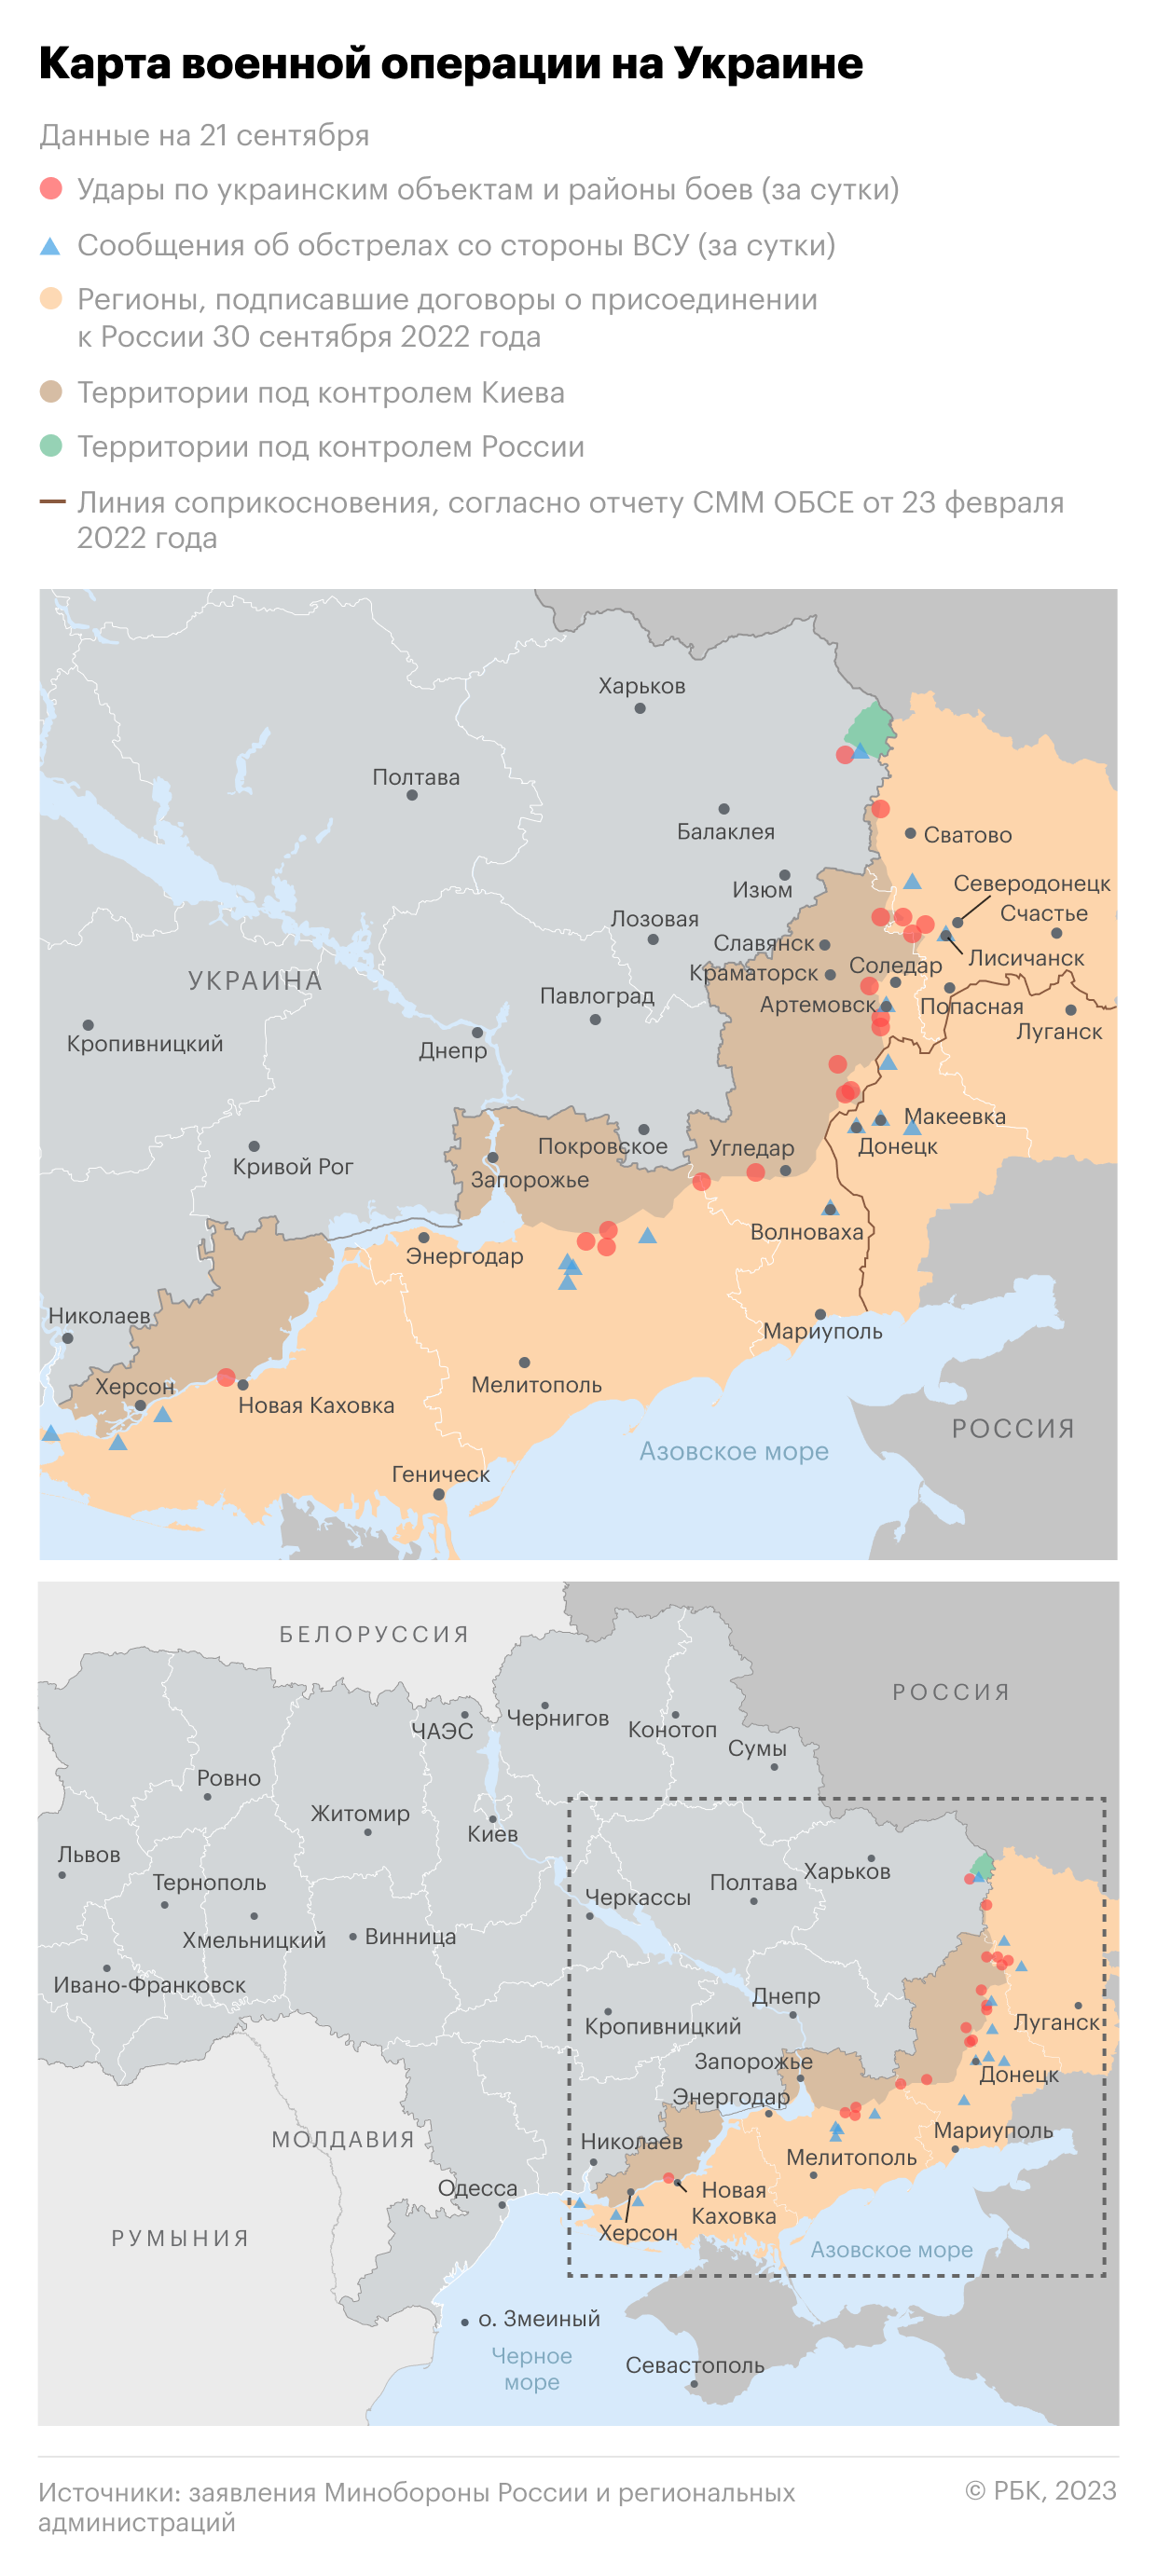 Военная операция на Украине. Карта на 21 сентября